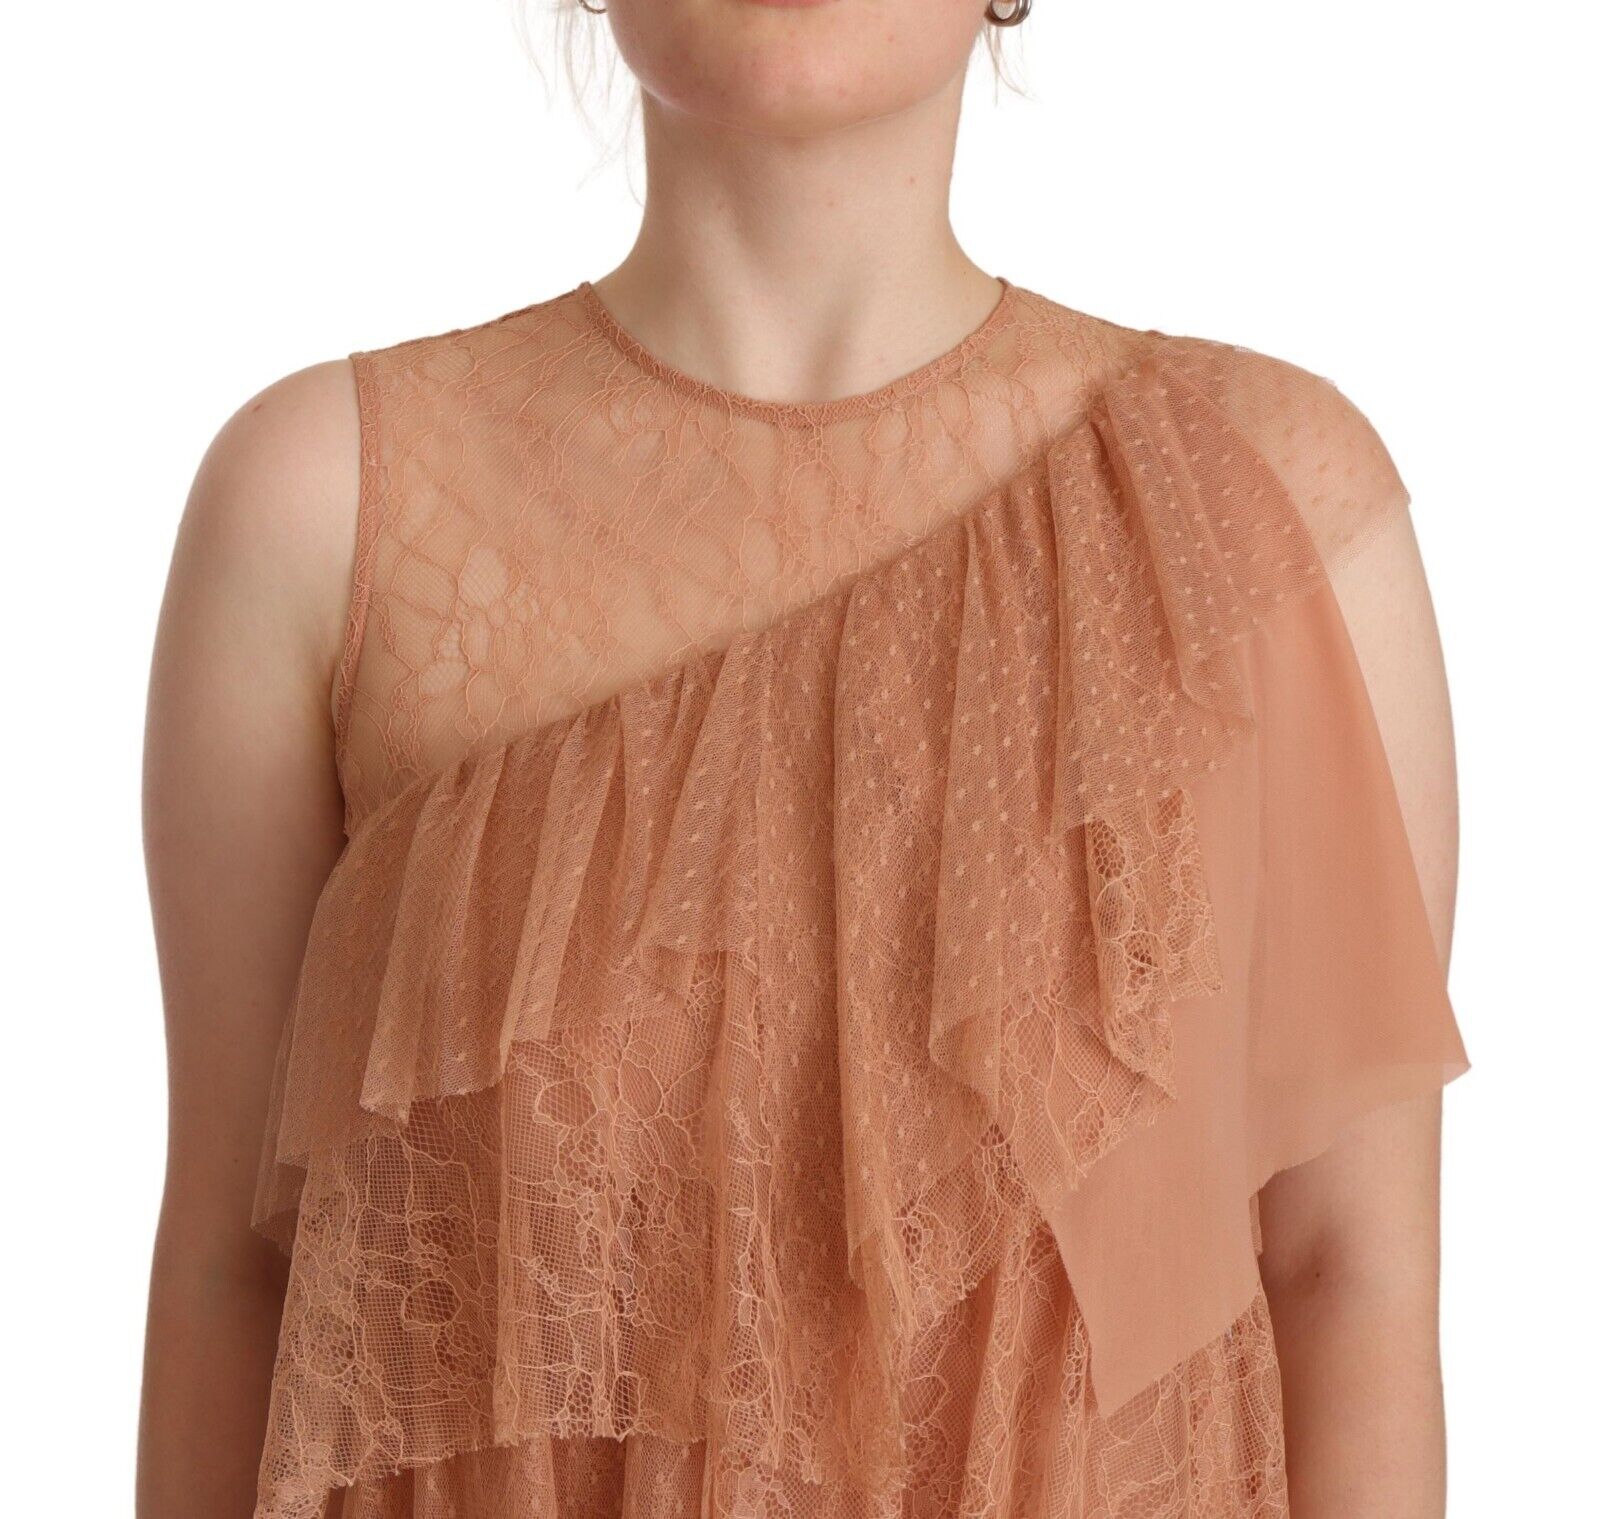 Liu Jo Pink Lace Sleeveless Mini Shift Layered Dress - Fizigo